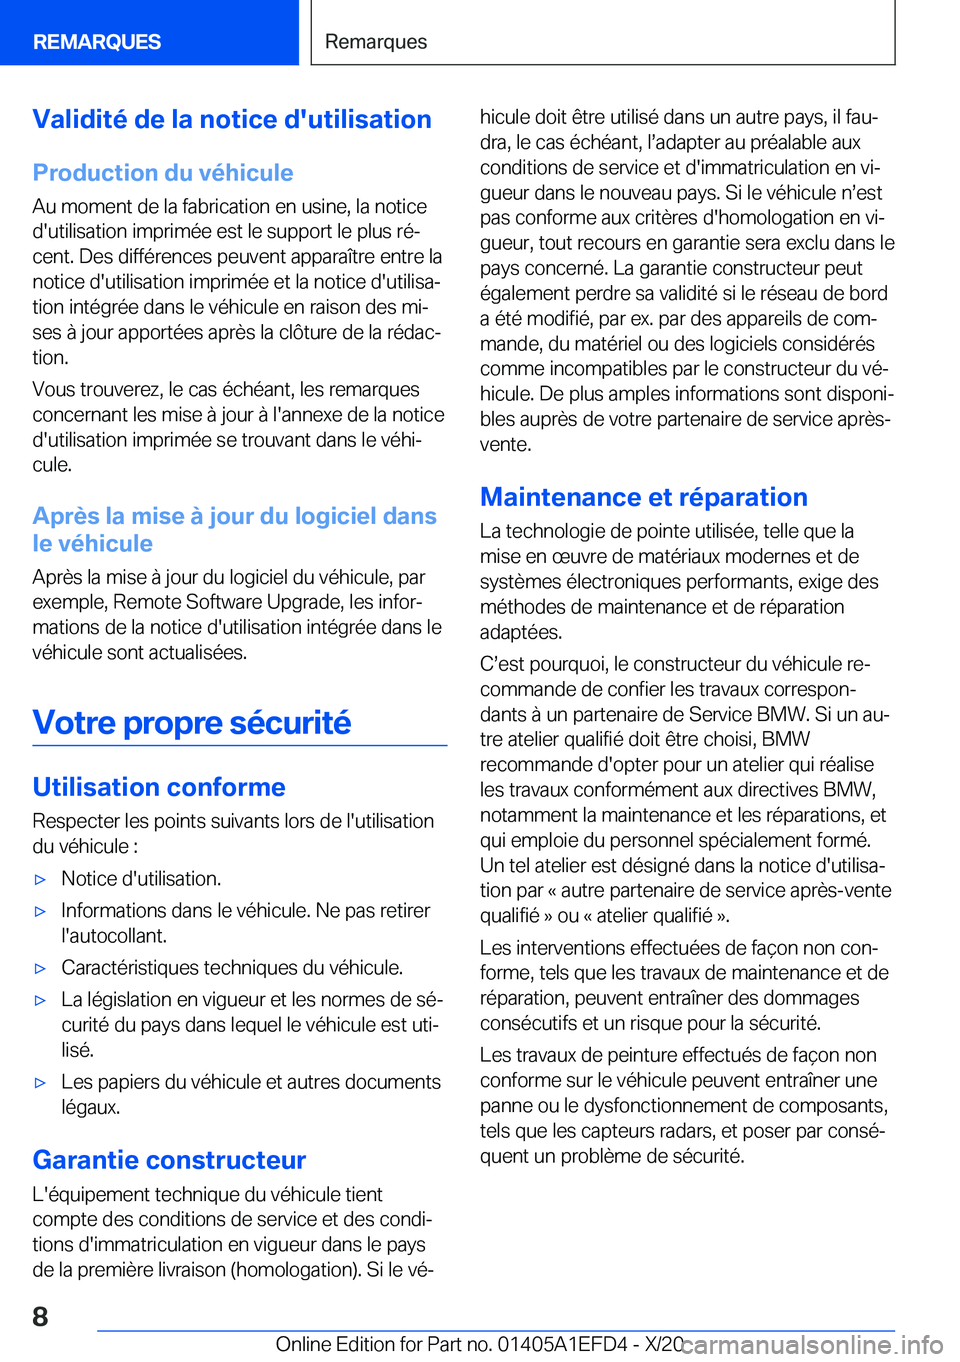 BMW X7 2021  Notices Demploi (in French) �V�a�l�i�d�i�t�é��d�e��l�a��n�o�t�i�c�e��d�'�u�t�i�l�i�s�a�t�i�o�n
�P�r�o�d�u�c�t�i�o�n��d�u��v�é�h�i�c�u�l�e
�A�u��m�o�m�e�n�t��d�e��l�a��f�a�b�r�i�c�a�t�i�o�n��e�n��u�s�i�n�e�,��l